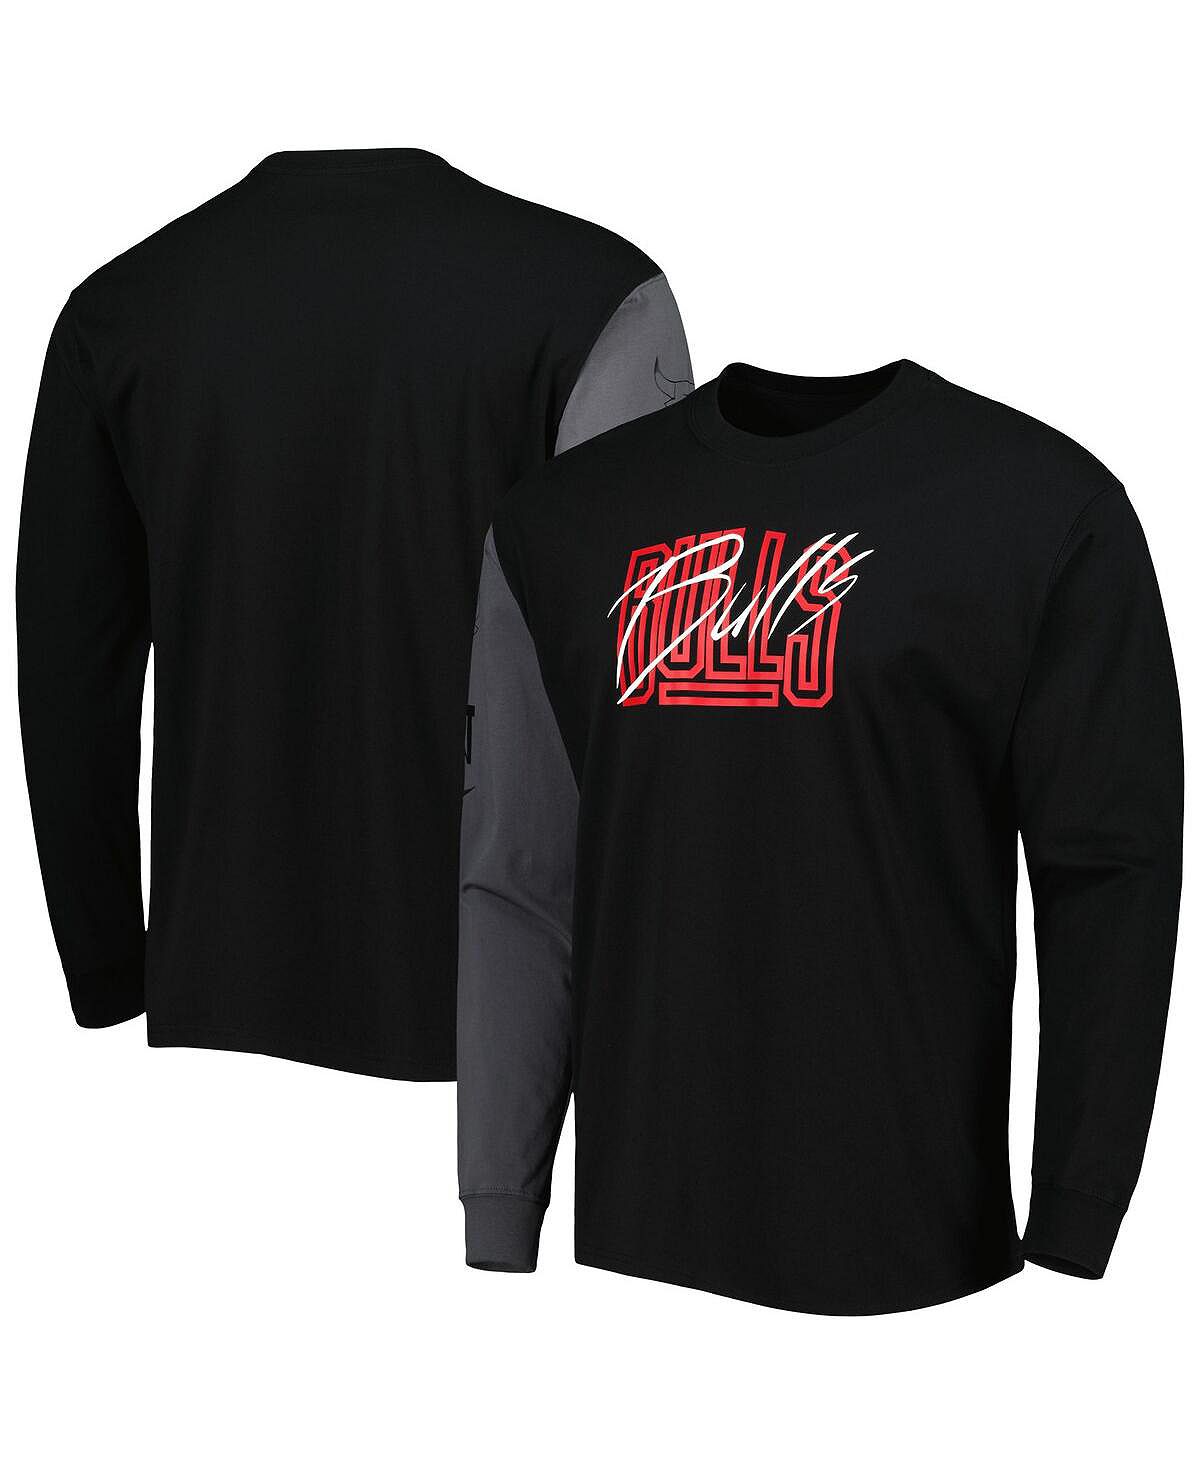 Мужская черная футболка с длинным рукавом Chicago Bulls Courtside Versus Flight MAX90 Nike chicago bulls logo basic